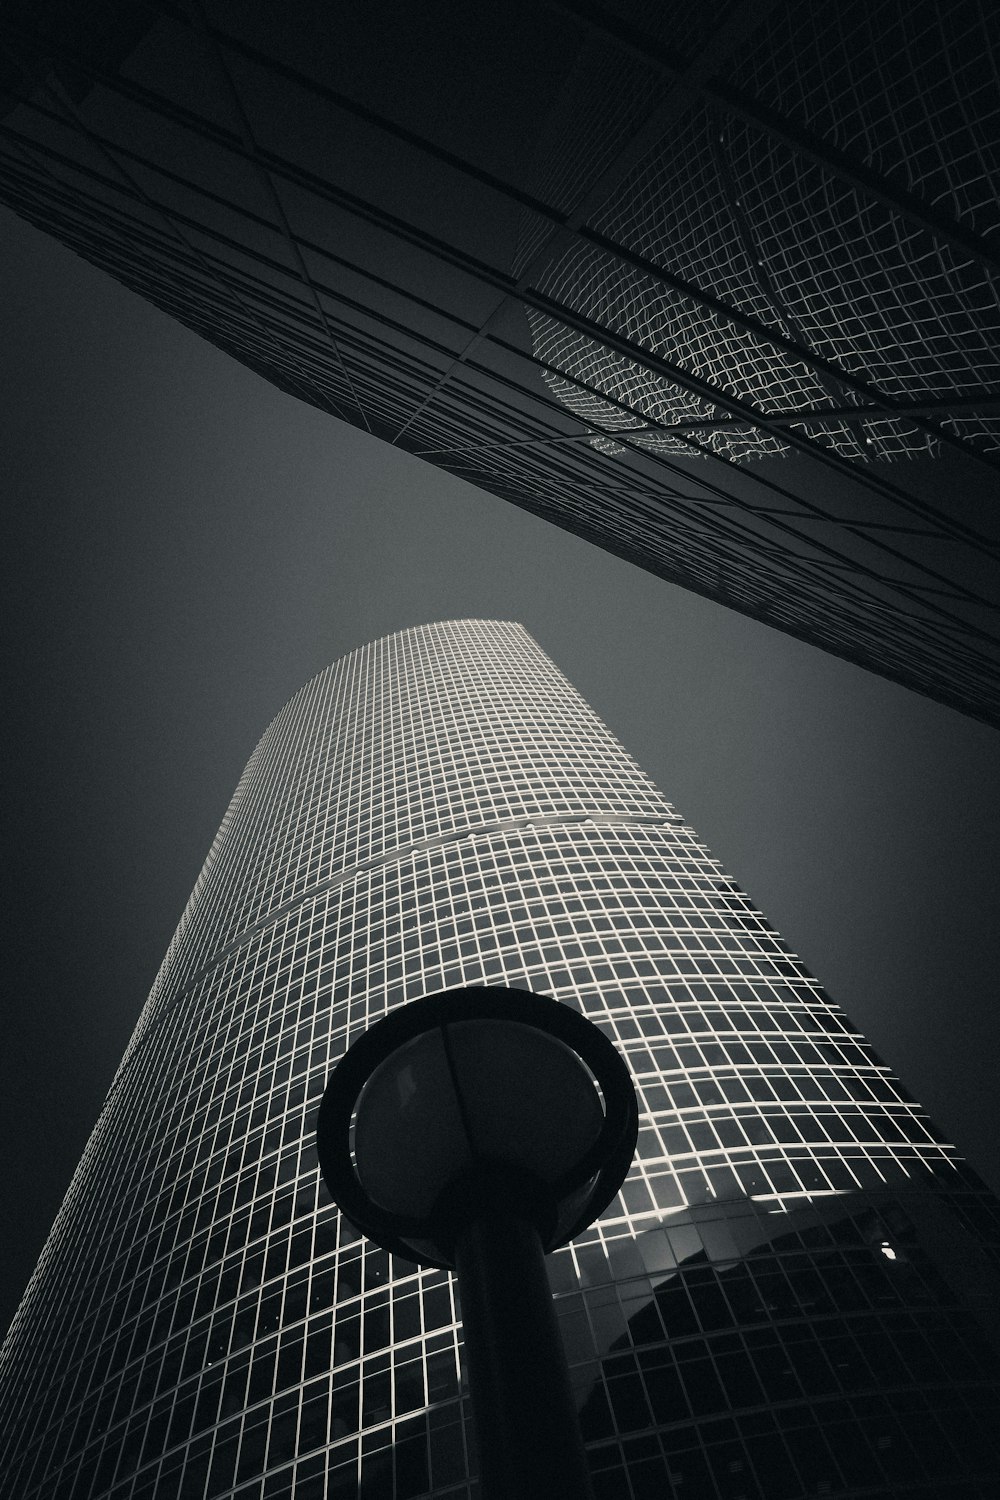 un poste de luz frente a un gran edificio